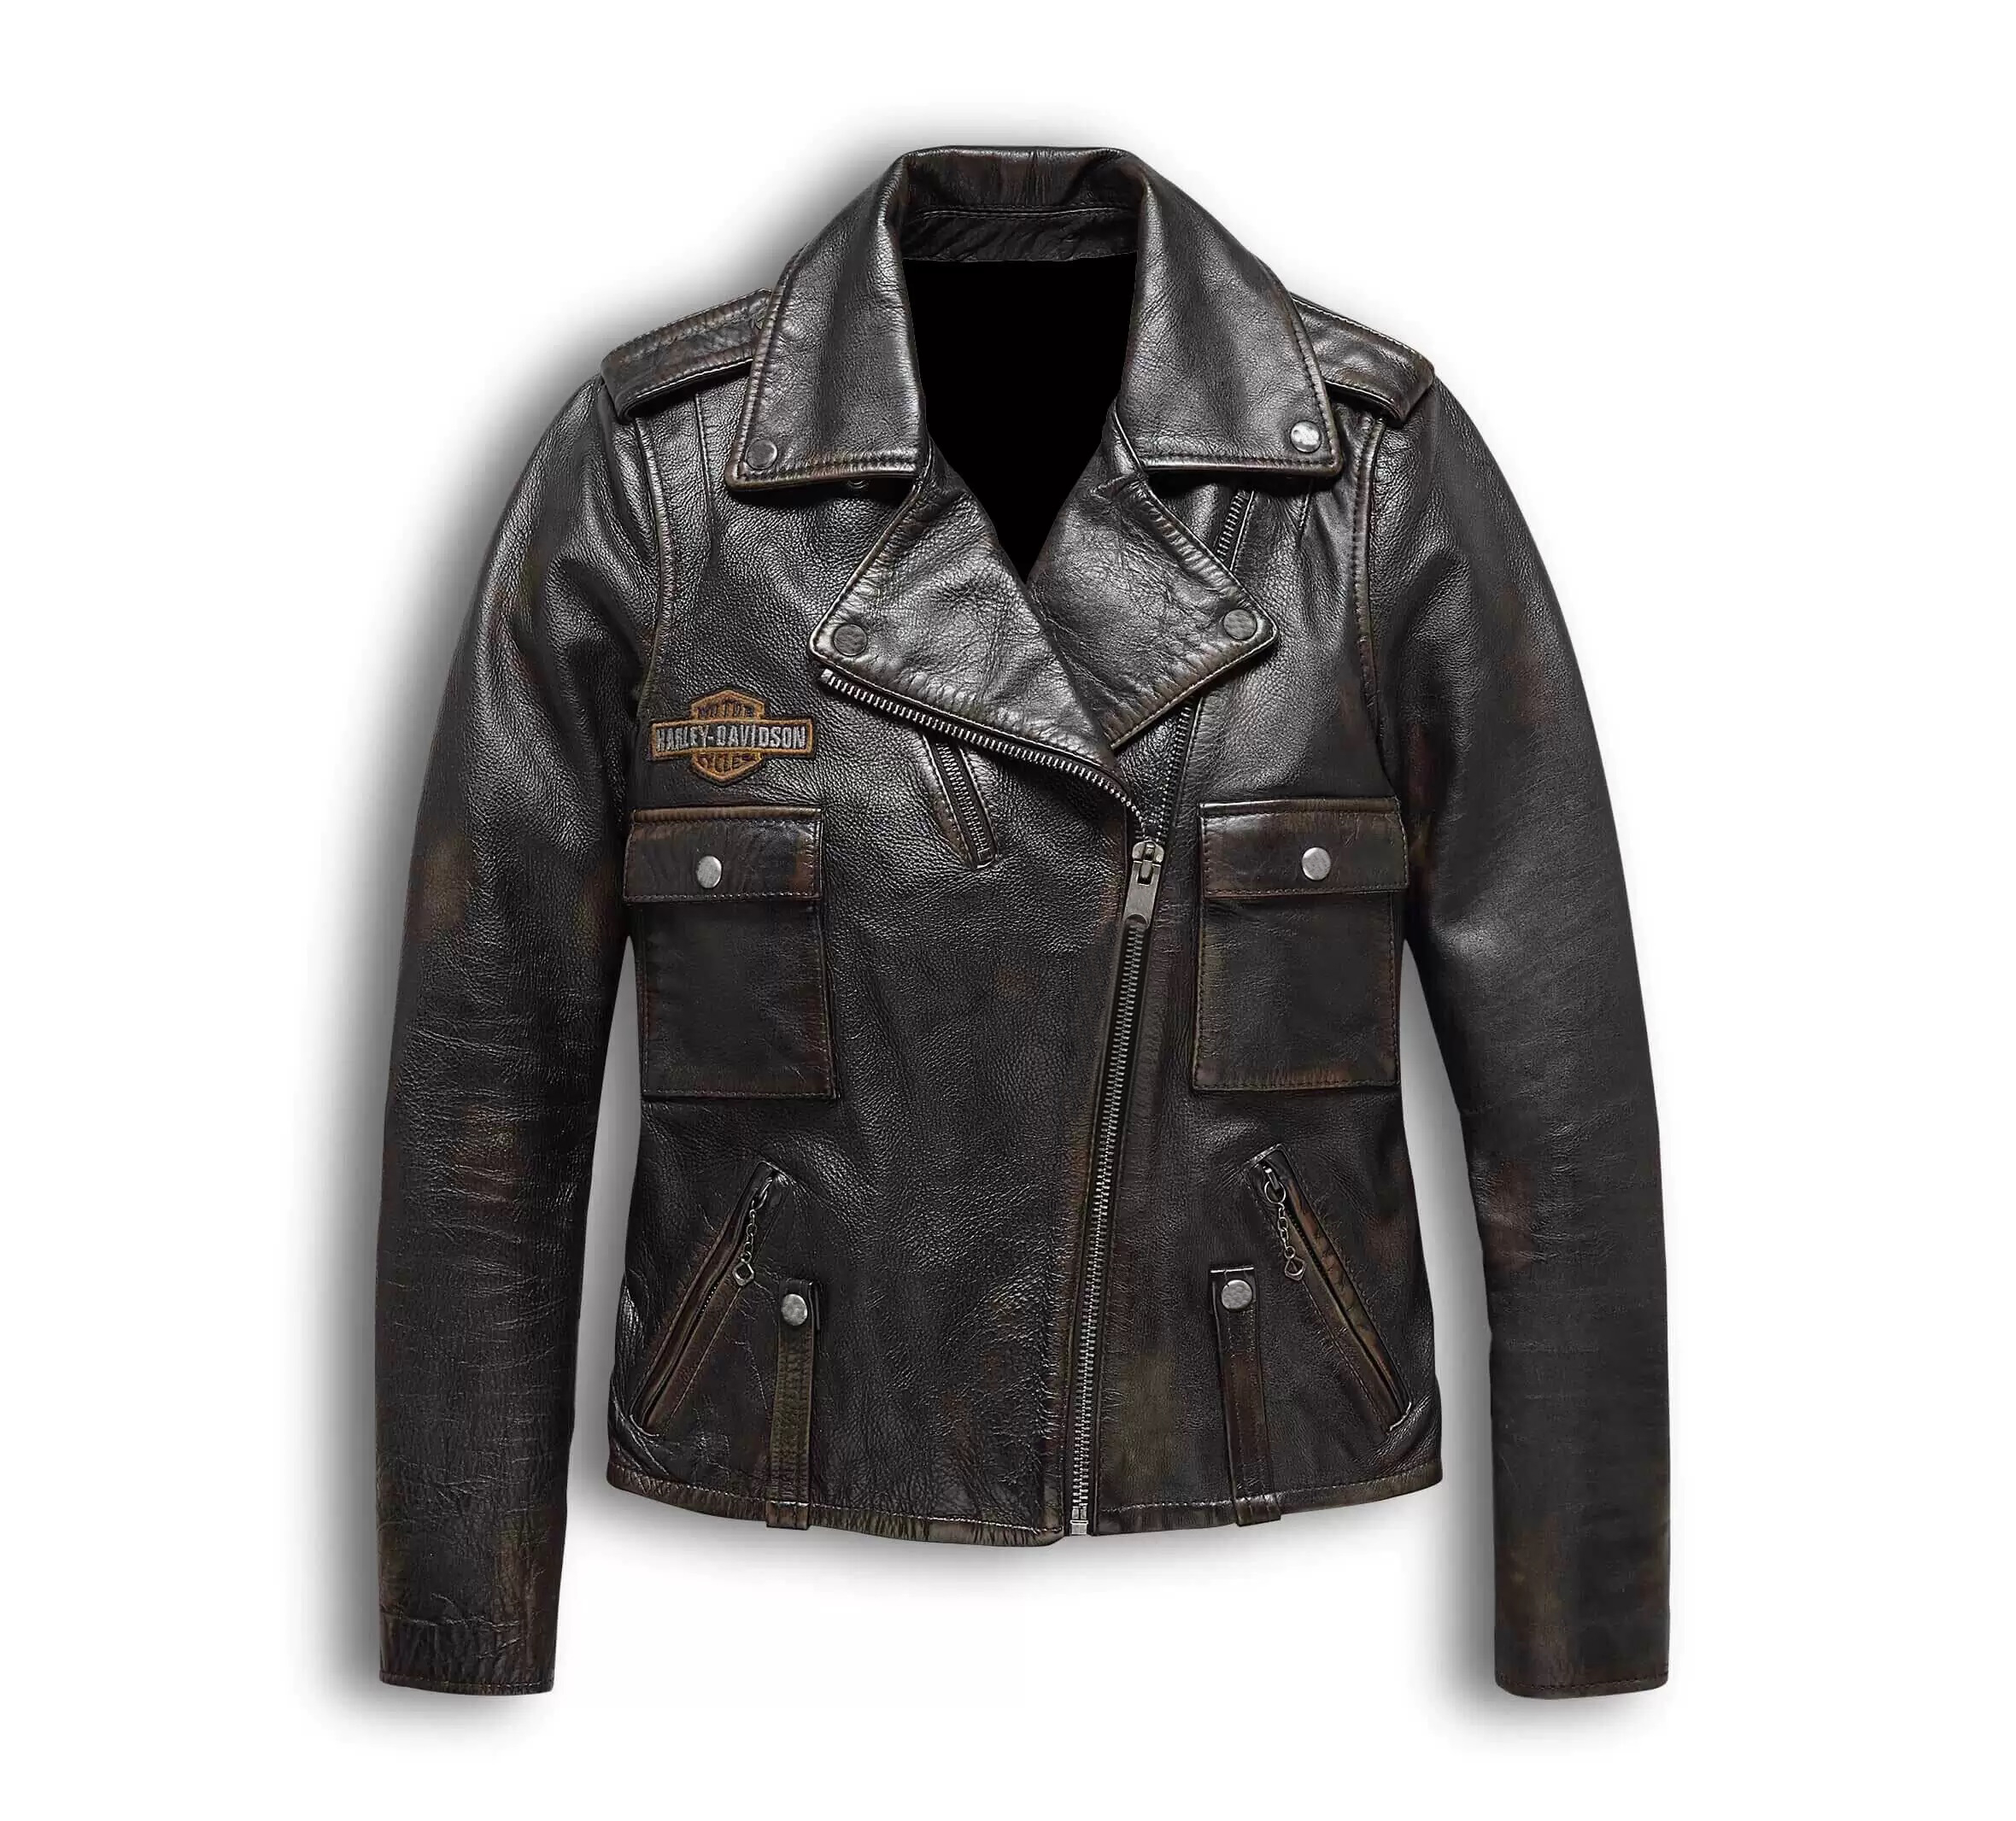 Harley Davidson Eagle Distressed Leather Biker Jacket - Maker of Jacket